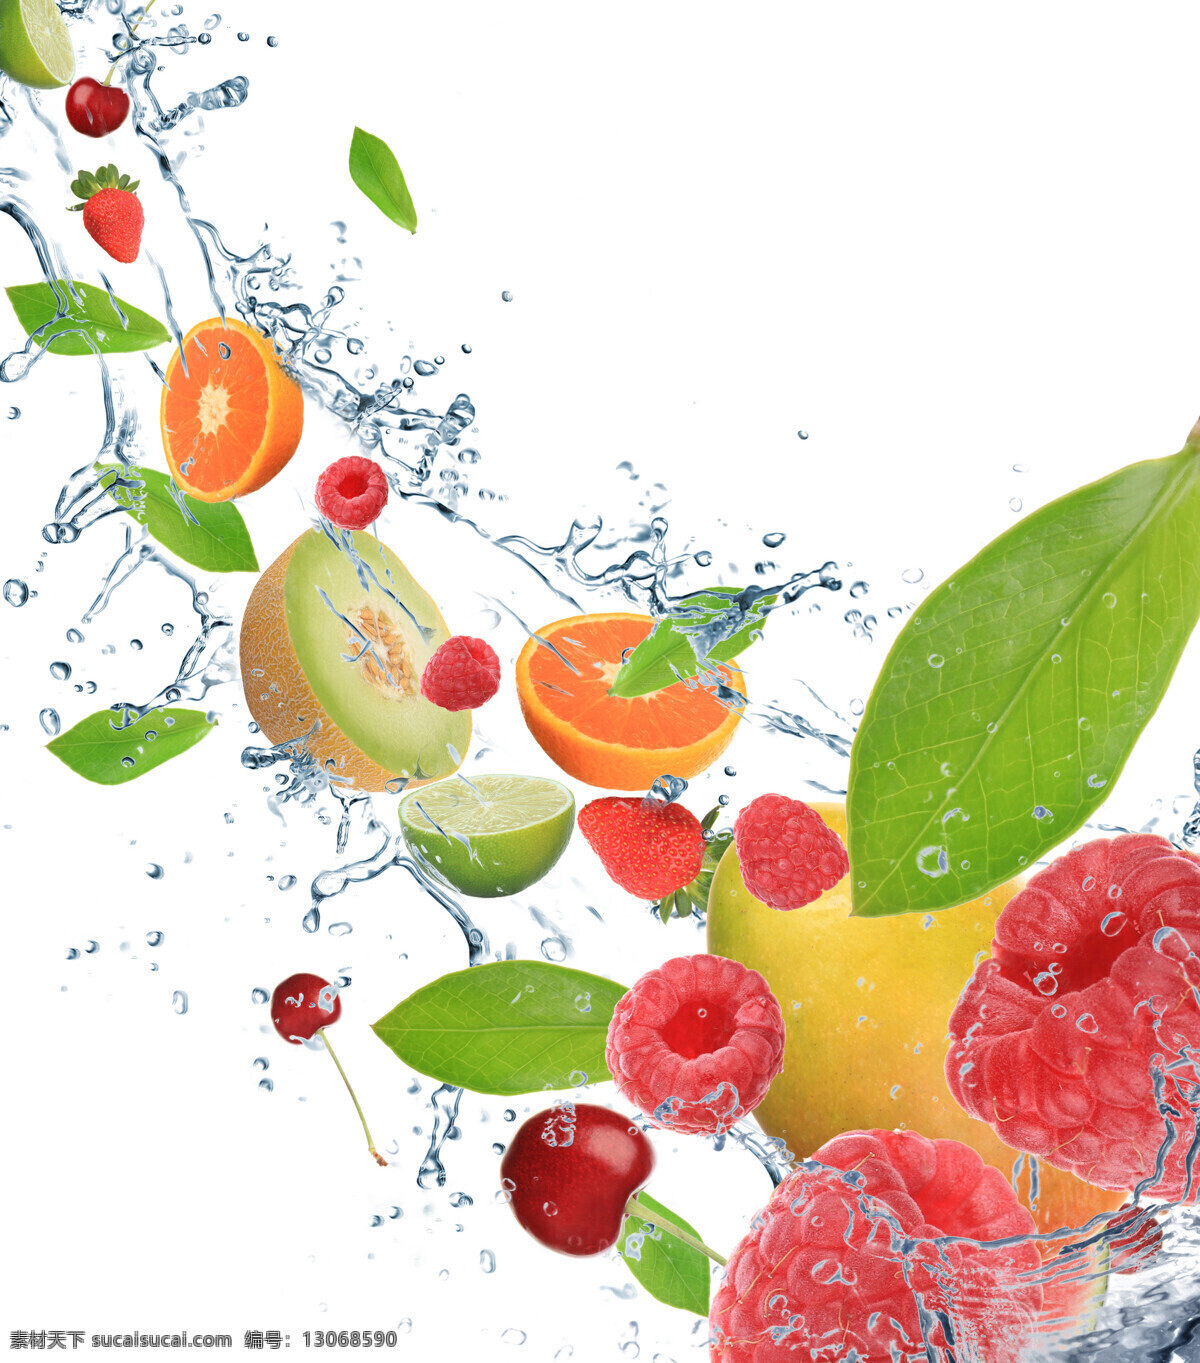 水果 背景 素材图片 橙子 草莓 猕猴桃 水 水珠 叶子 绿叶 水果背景 水果素材 水果图片 餐饮美食